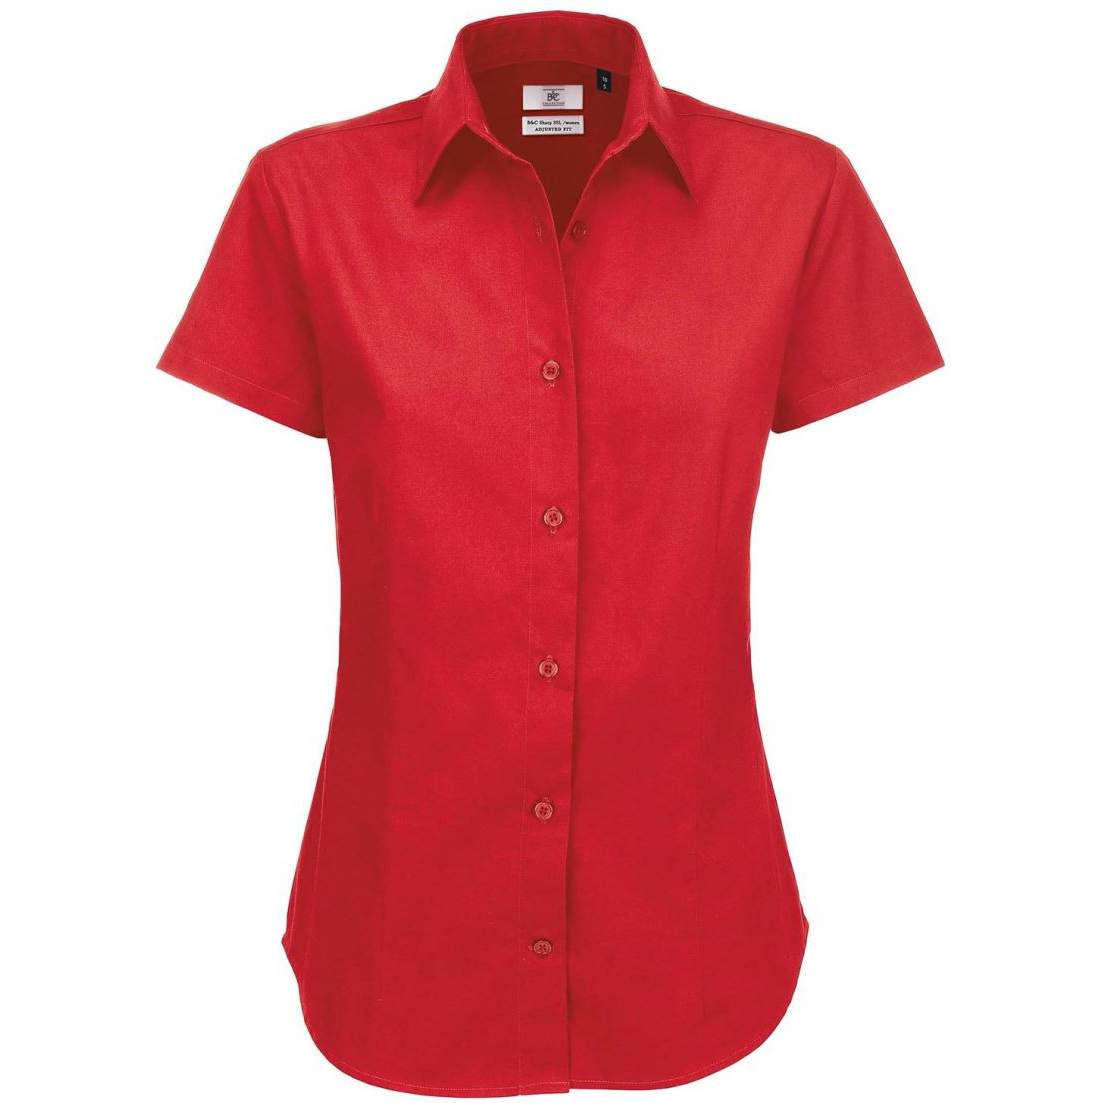 Dámská keprová košile B&C Sharp s krátkým rukávem - červená, M